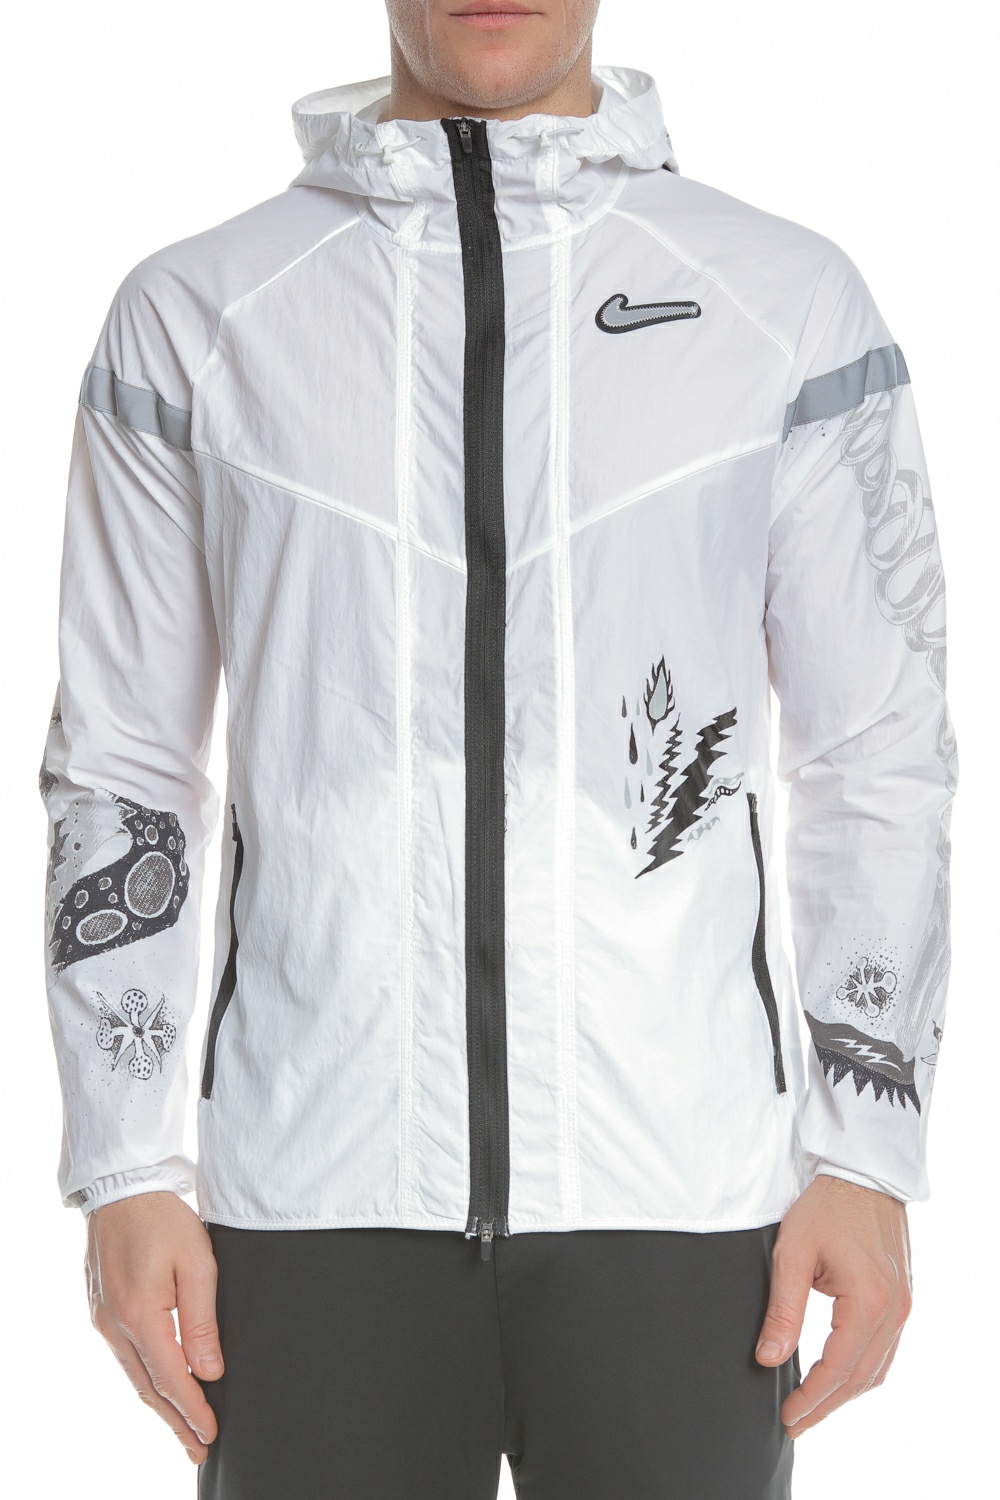 Ανδρικά/Ρούχα/Πανωφόρια/Τζάκετς NIKE - Ανδρικό jacket NIKE WILD RUN WR JKT λευκό